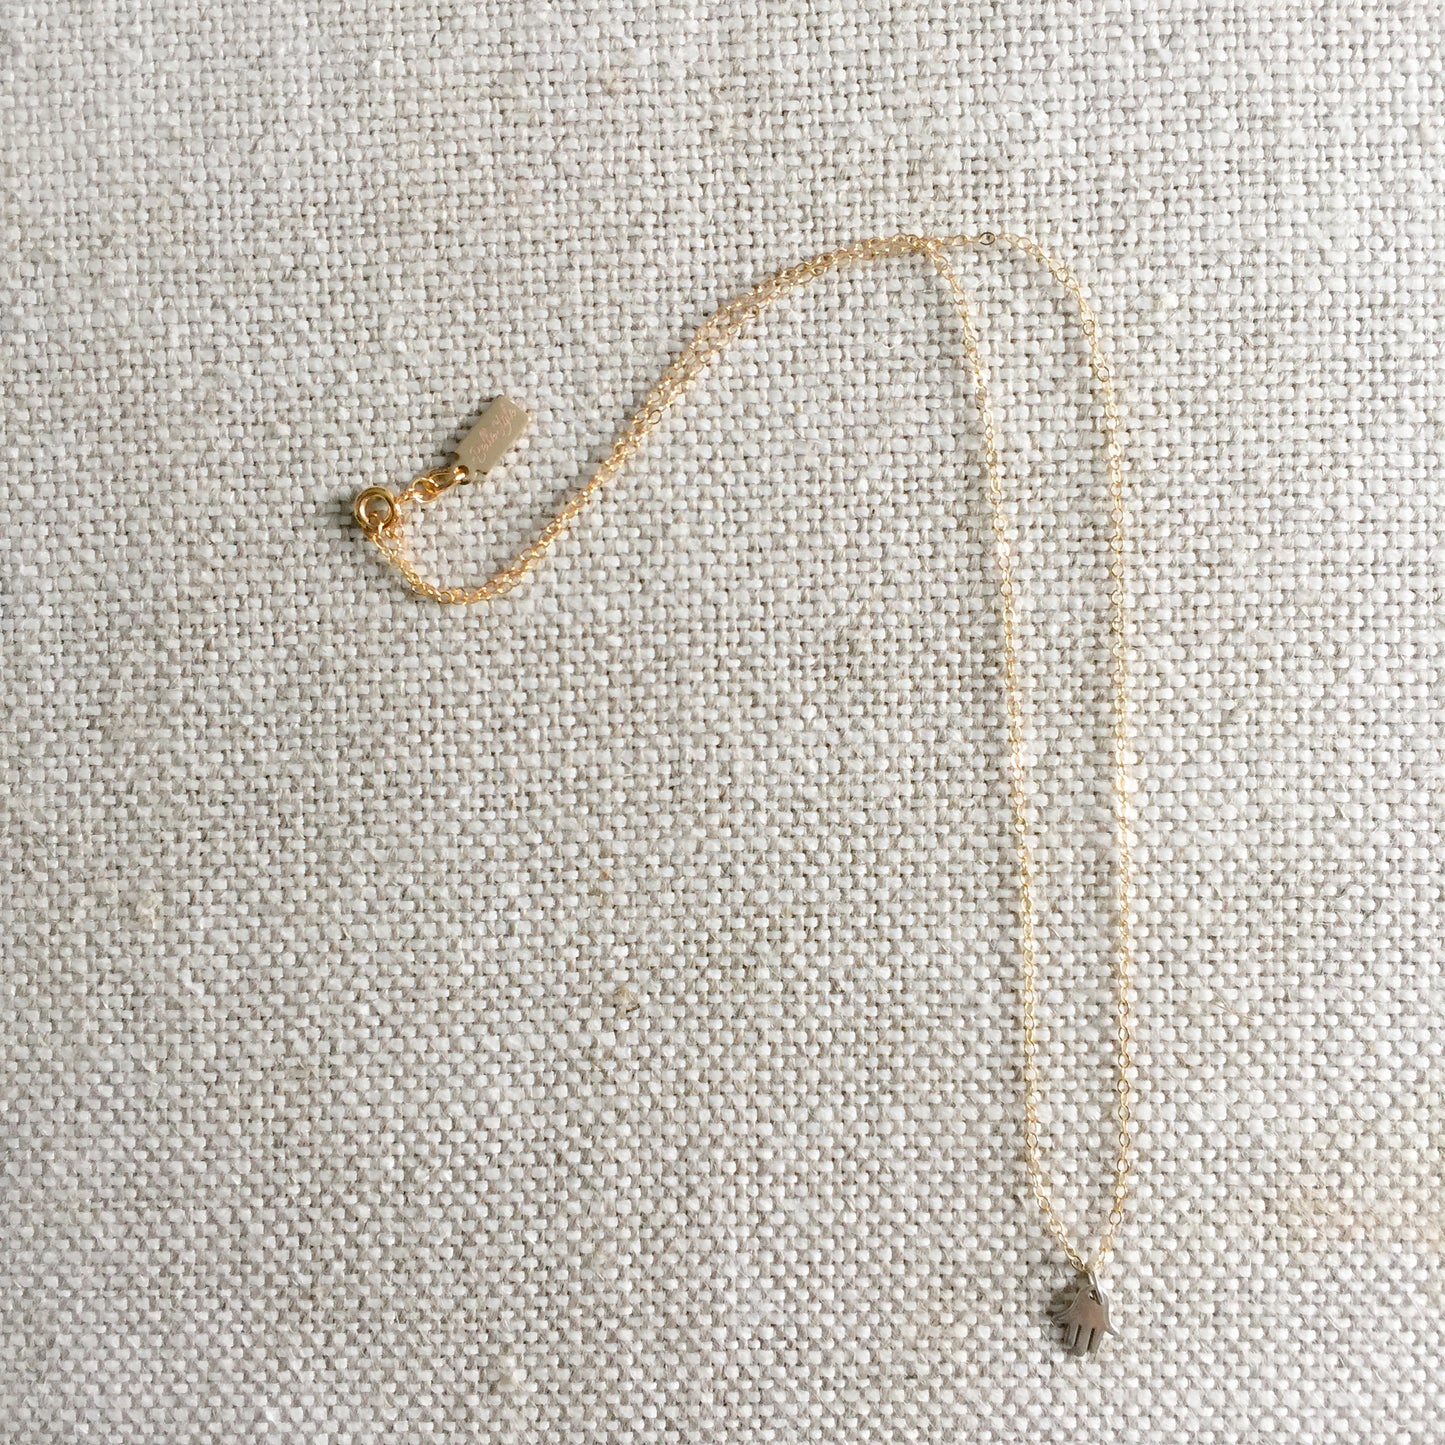 Hamsa Silver Mini Necklace - BelleStyle